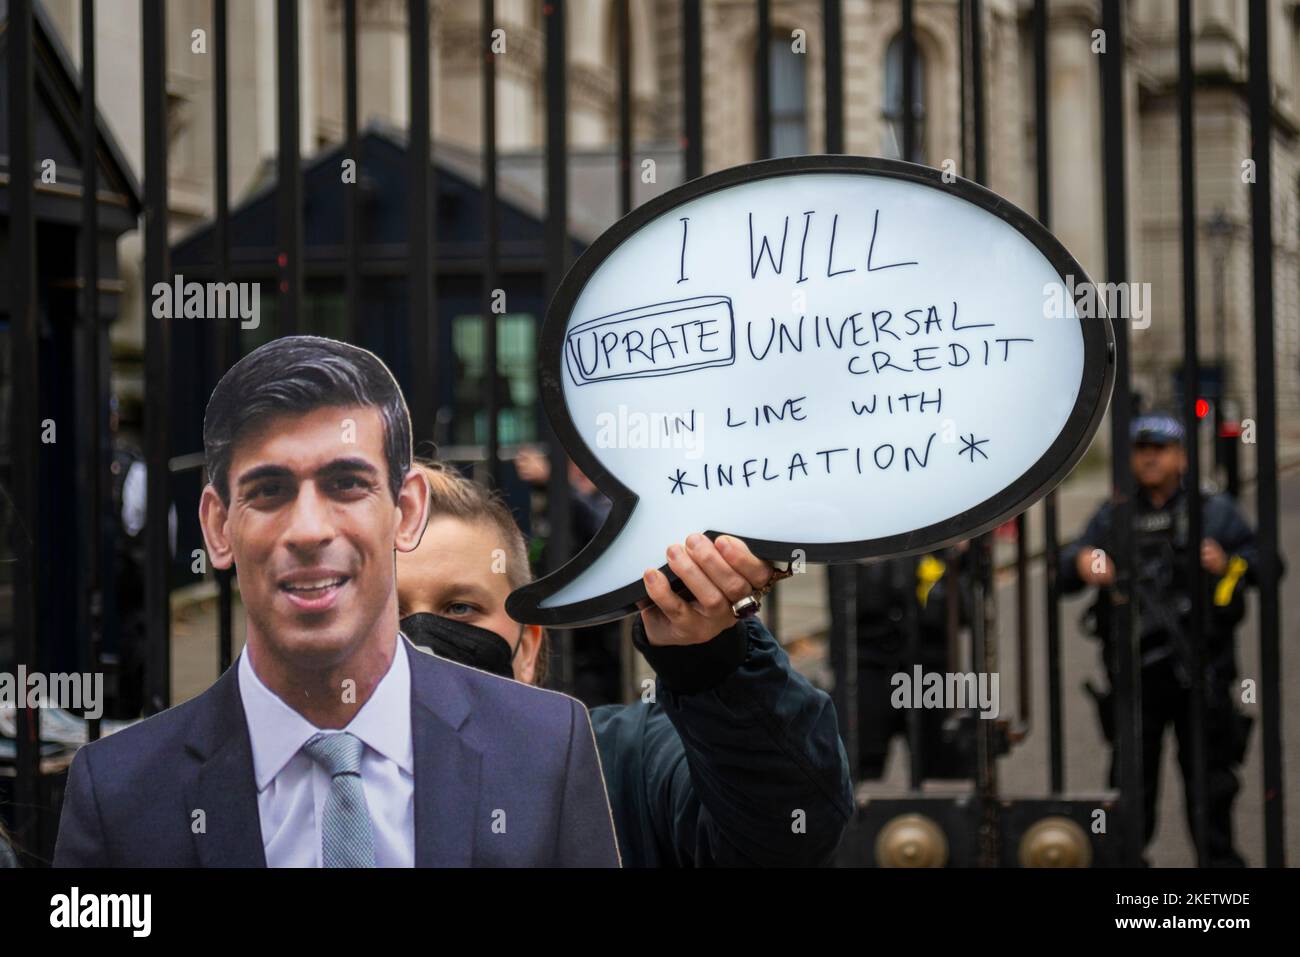 Whitehall, Westminster, Londra, Regno Unito. 14th Nov 2022. I manifestanti hanno creato una bolla di discorso per un'immagine di Rishi Sunak per evidenziare un messaggio per aumentare il credito universale in linea con l'inflazione. Citazione "riprarò il credito universale in linea con l'inflazione" Foto Stock